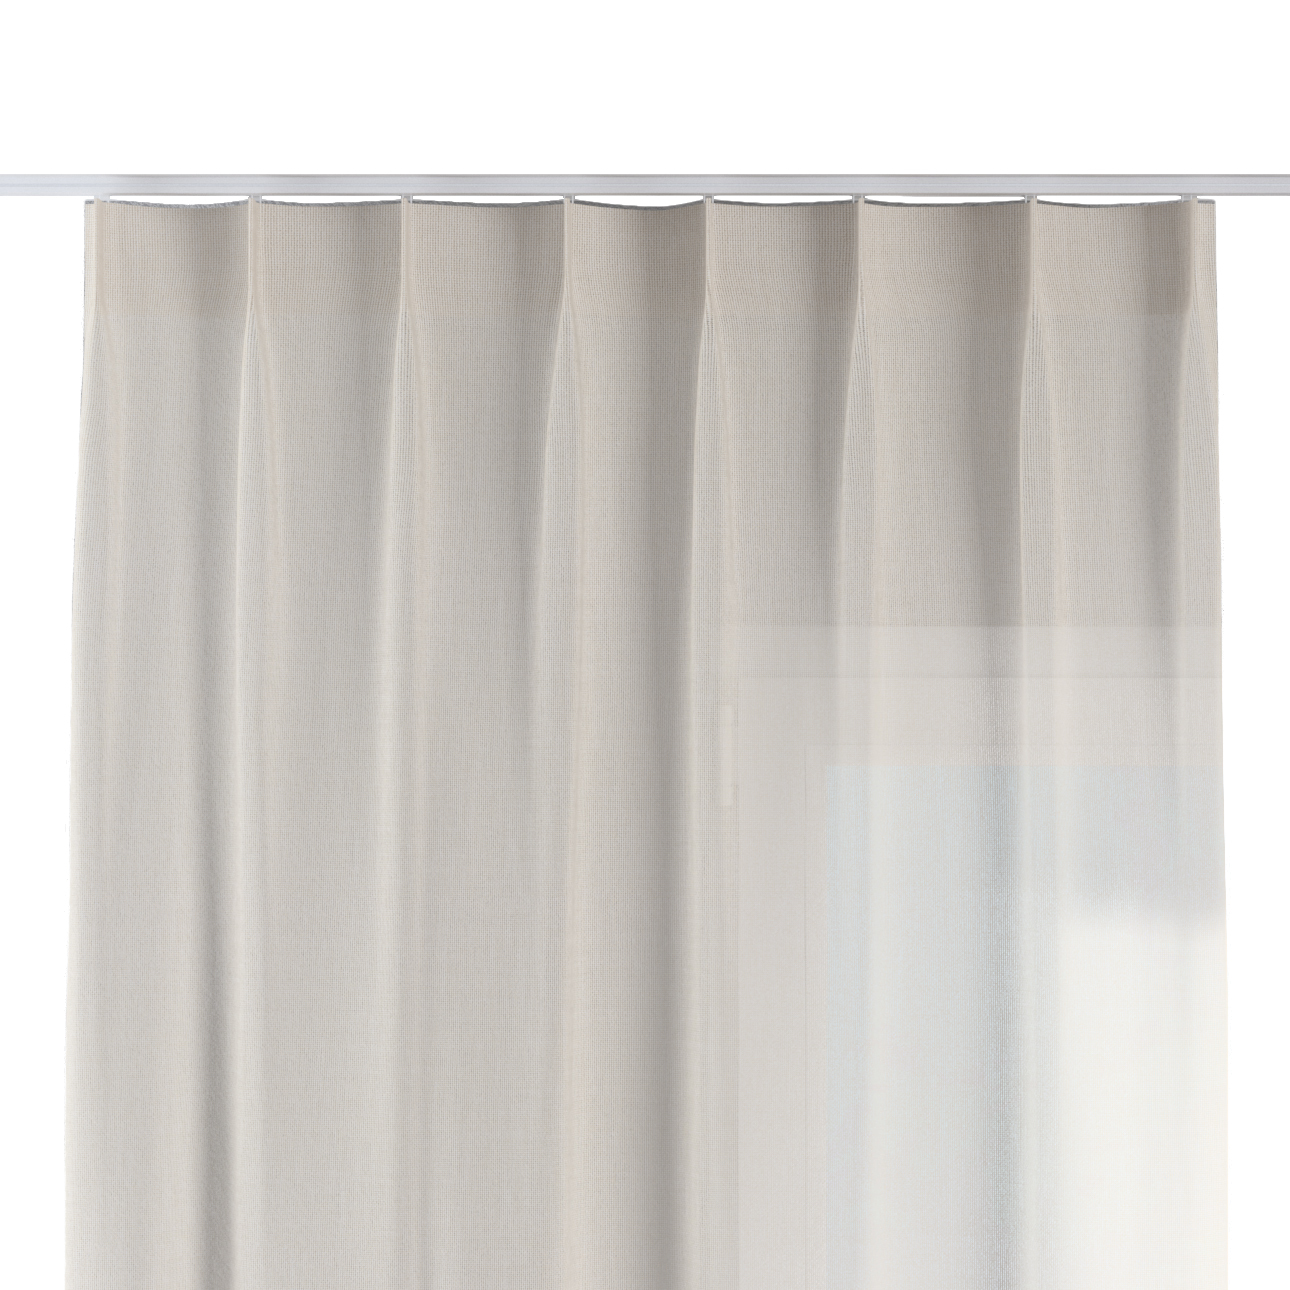 Vorhang mit flämischen 1-er Falten, creme, Sensual Premium (144-42) günstig online kaufen